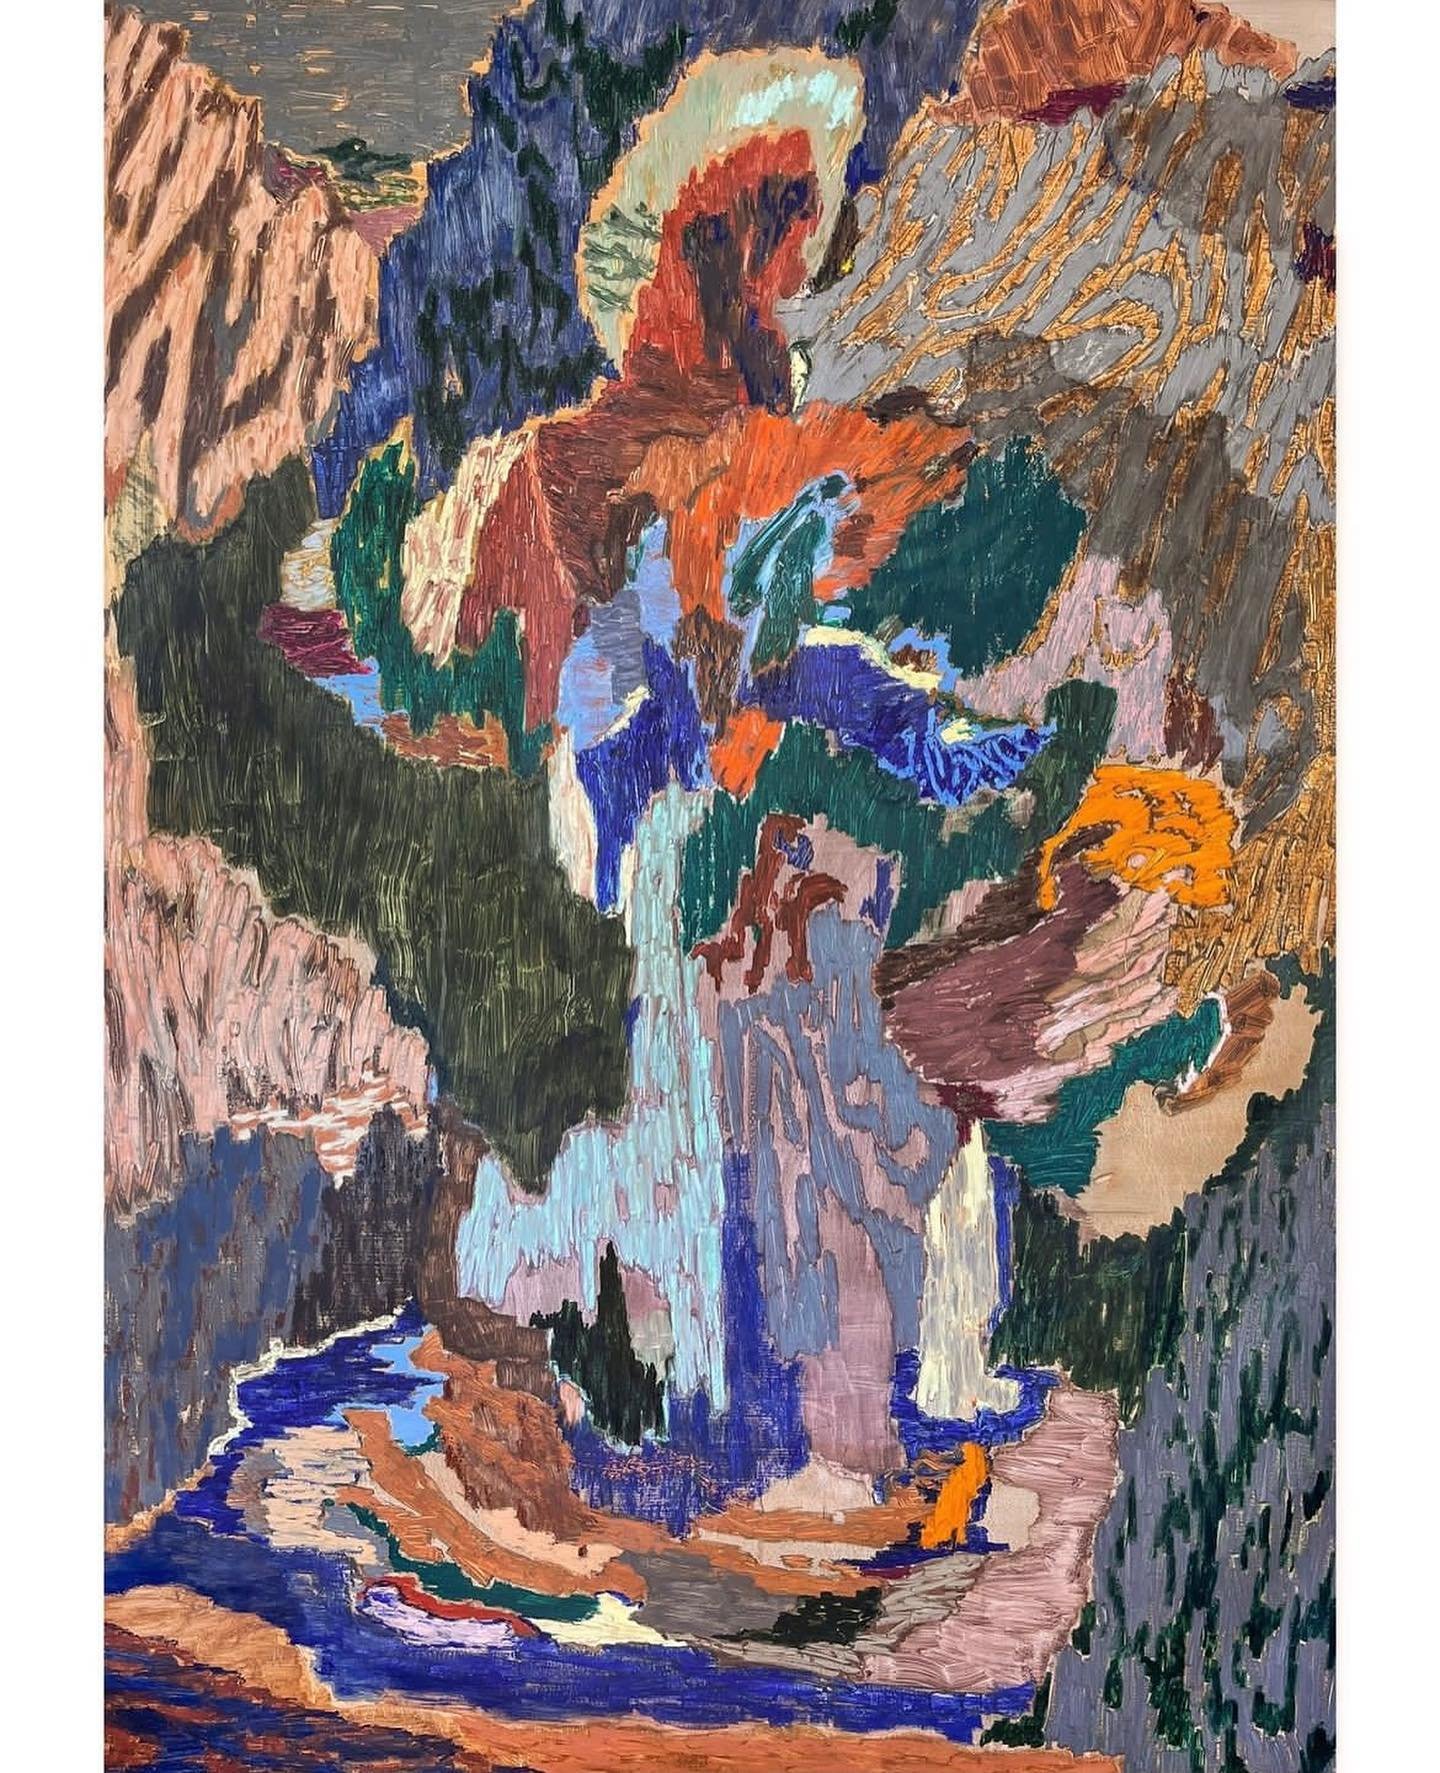 Painting by Gu&auml;mundur Thoroddsen. 💌 DM to sell work on HOV online gallery
-
-
-
-
-
-
-
-
-
-
-
-
-
-
-
-
-
-
-
-
#painters #paint #art #arts #paintings
#contemporaryart
#contemporarypainting #painting #abstraction#watercolour #watercolours #ar